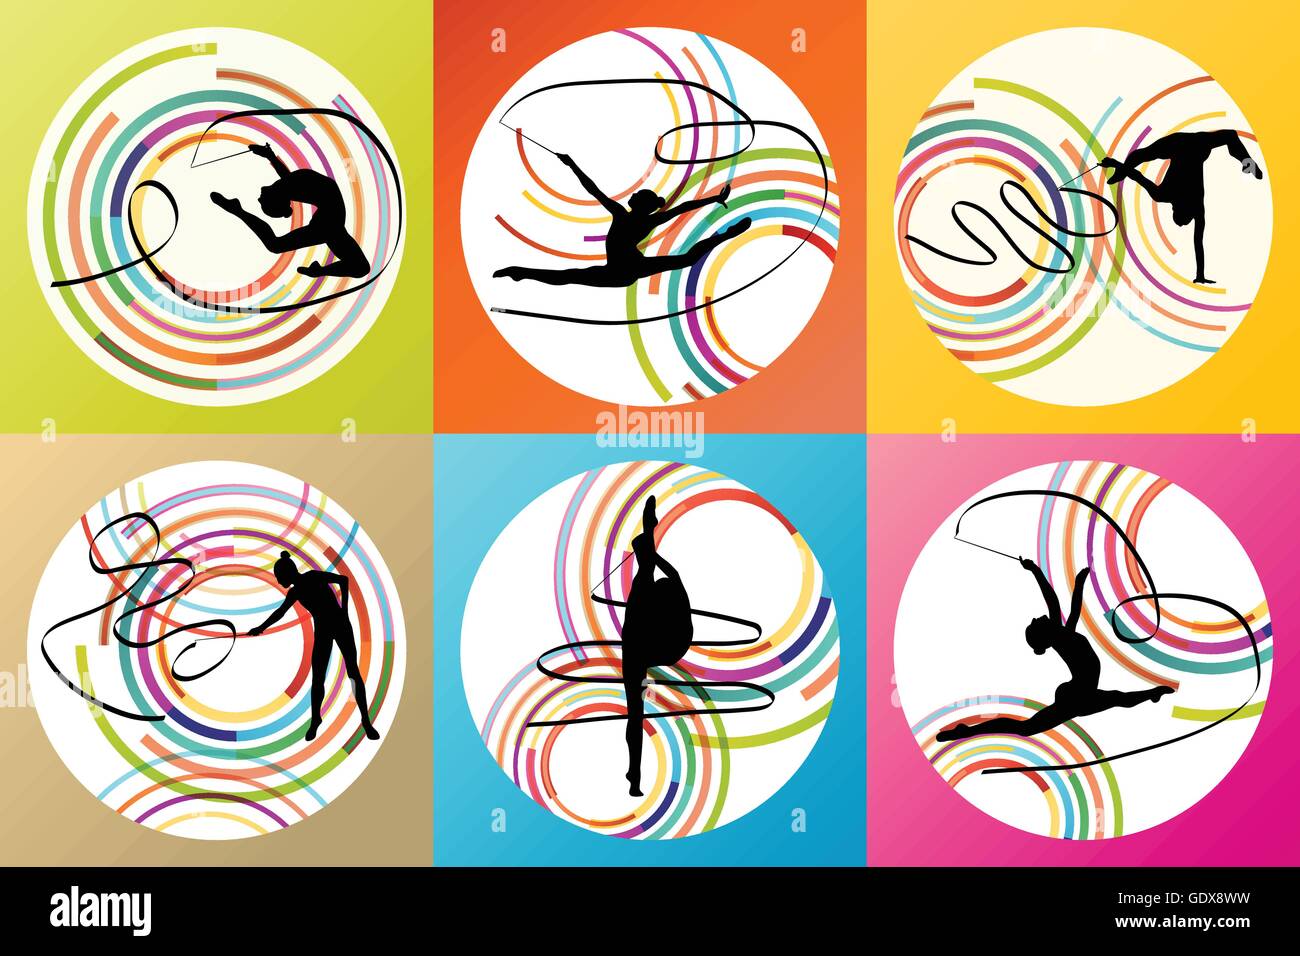 La gymnastique artistique avec ruban vector background concept set Illustration de Vecteur